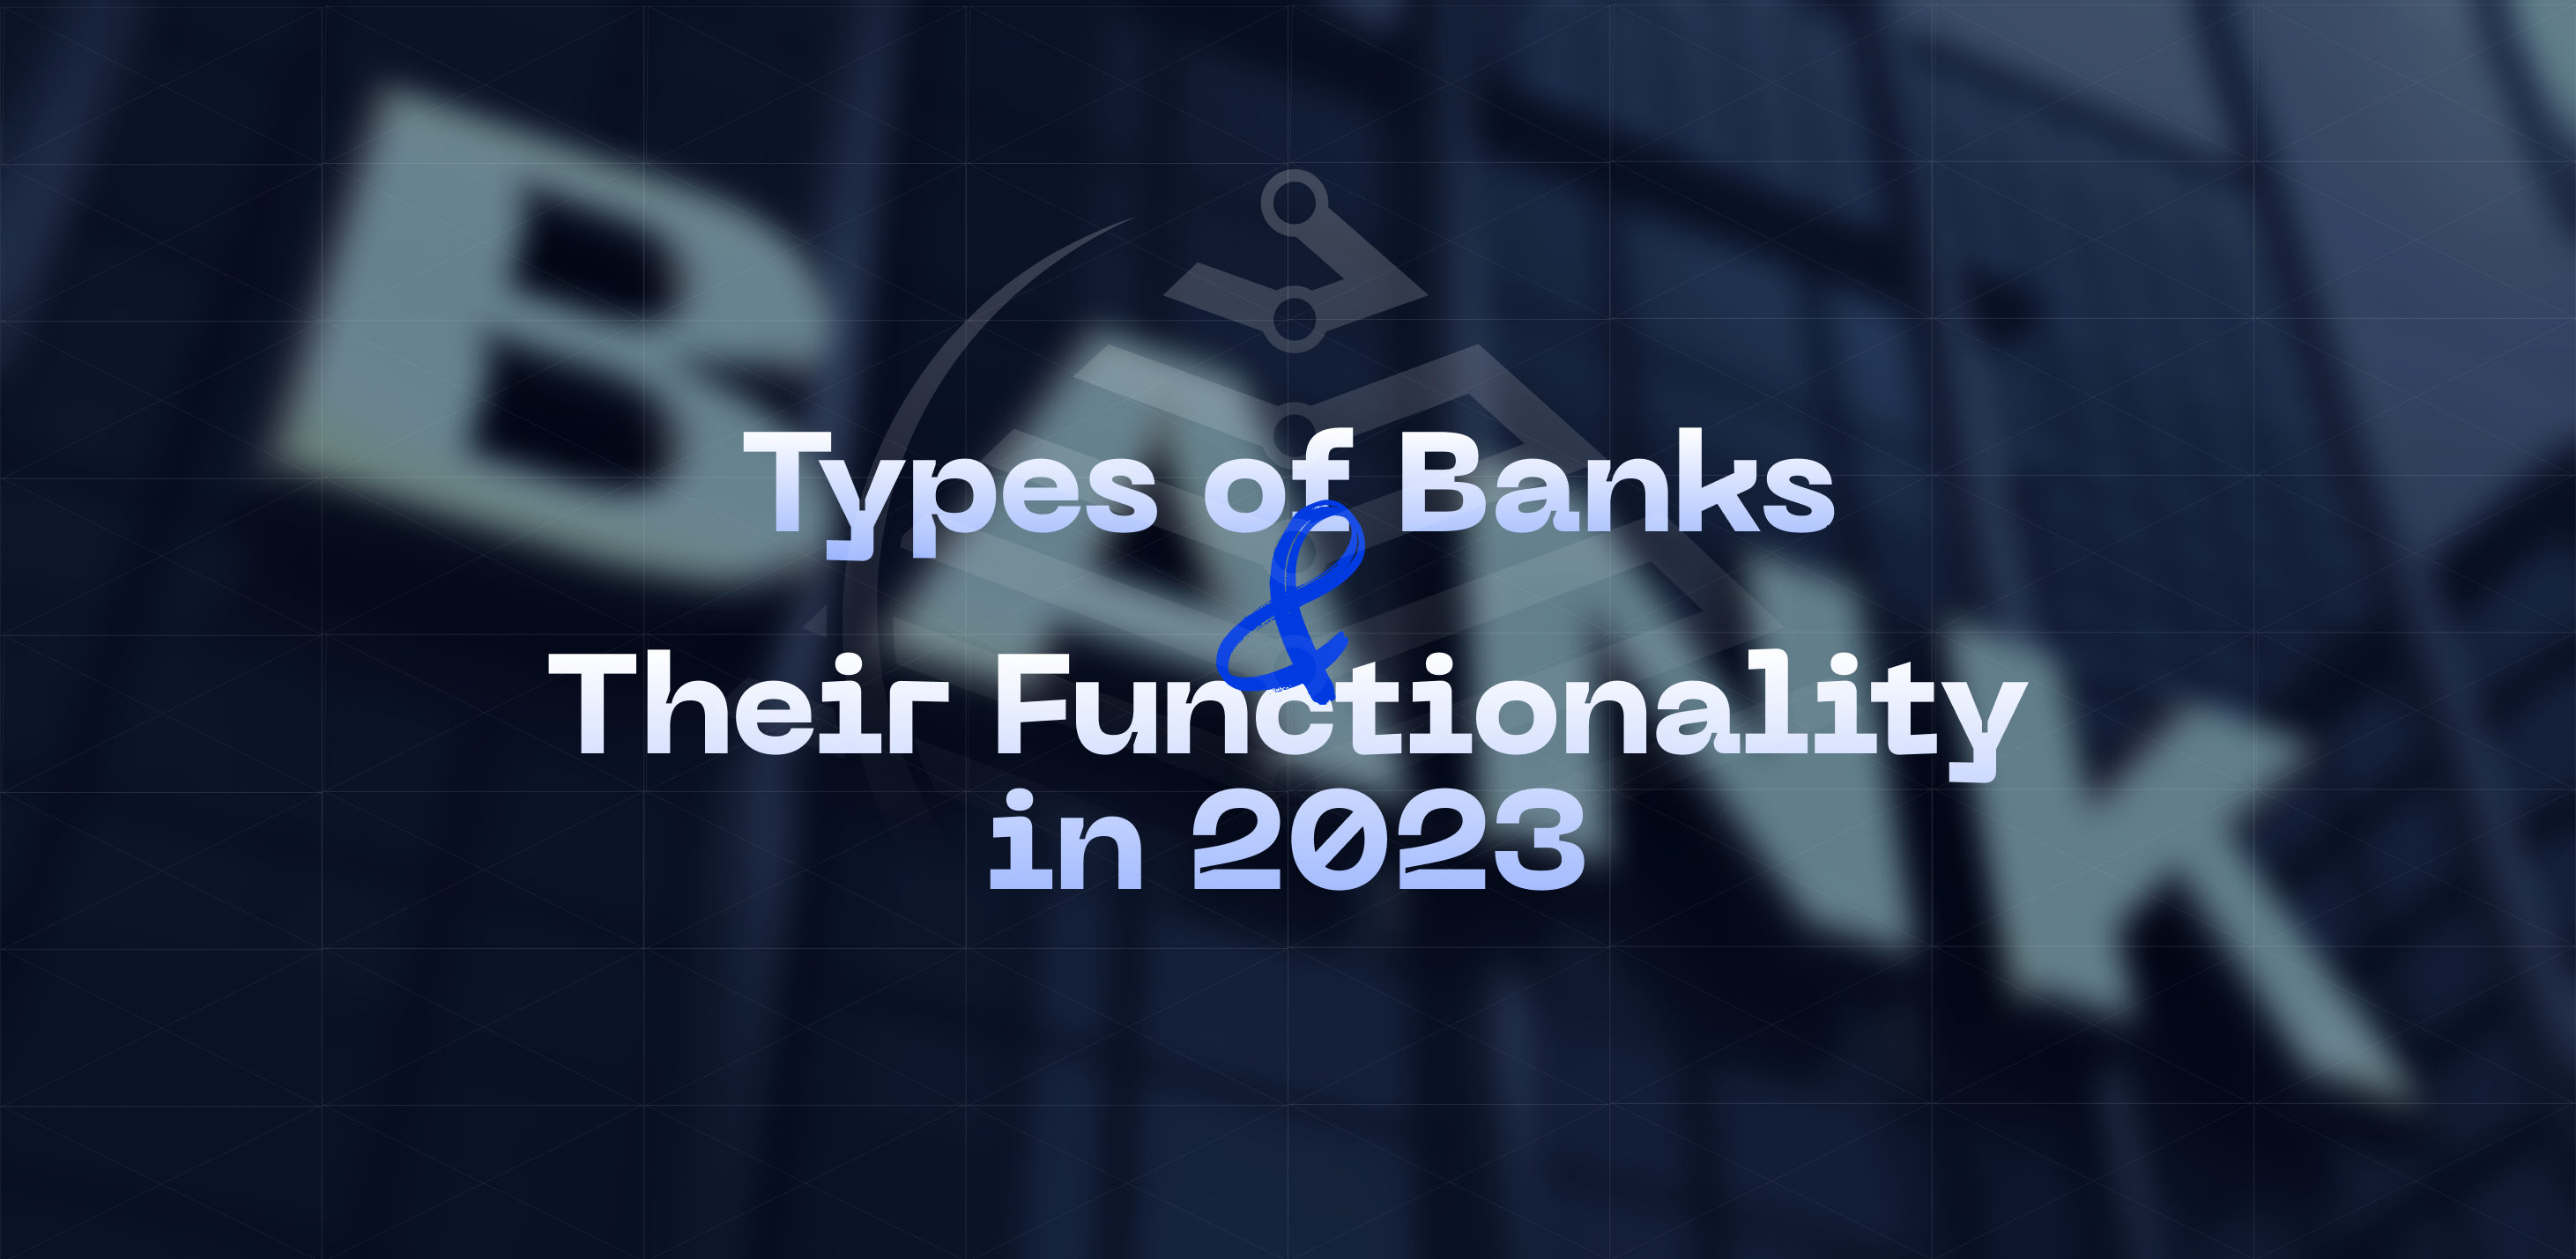 Види банків та їх основні функції 2023